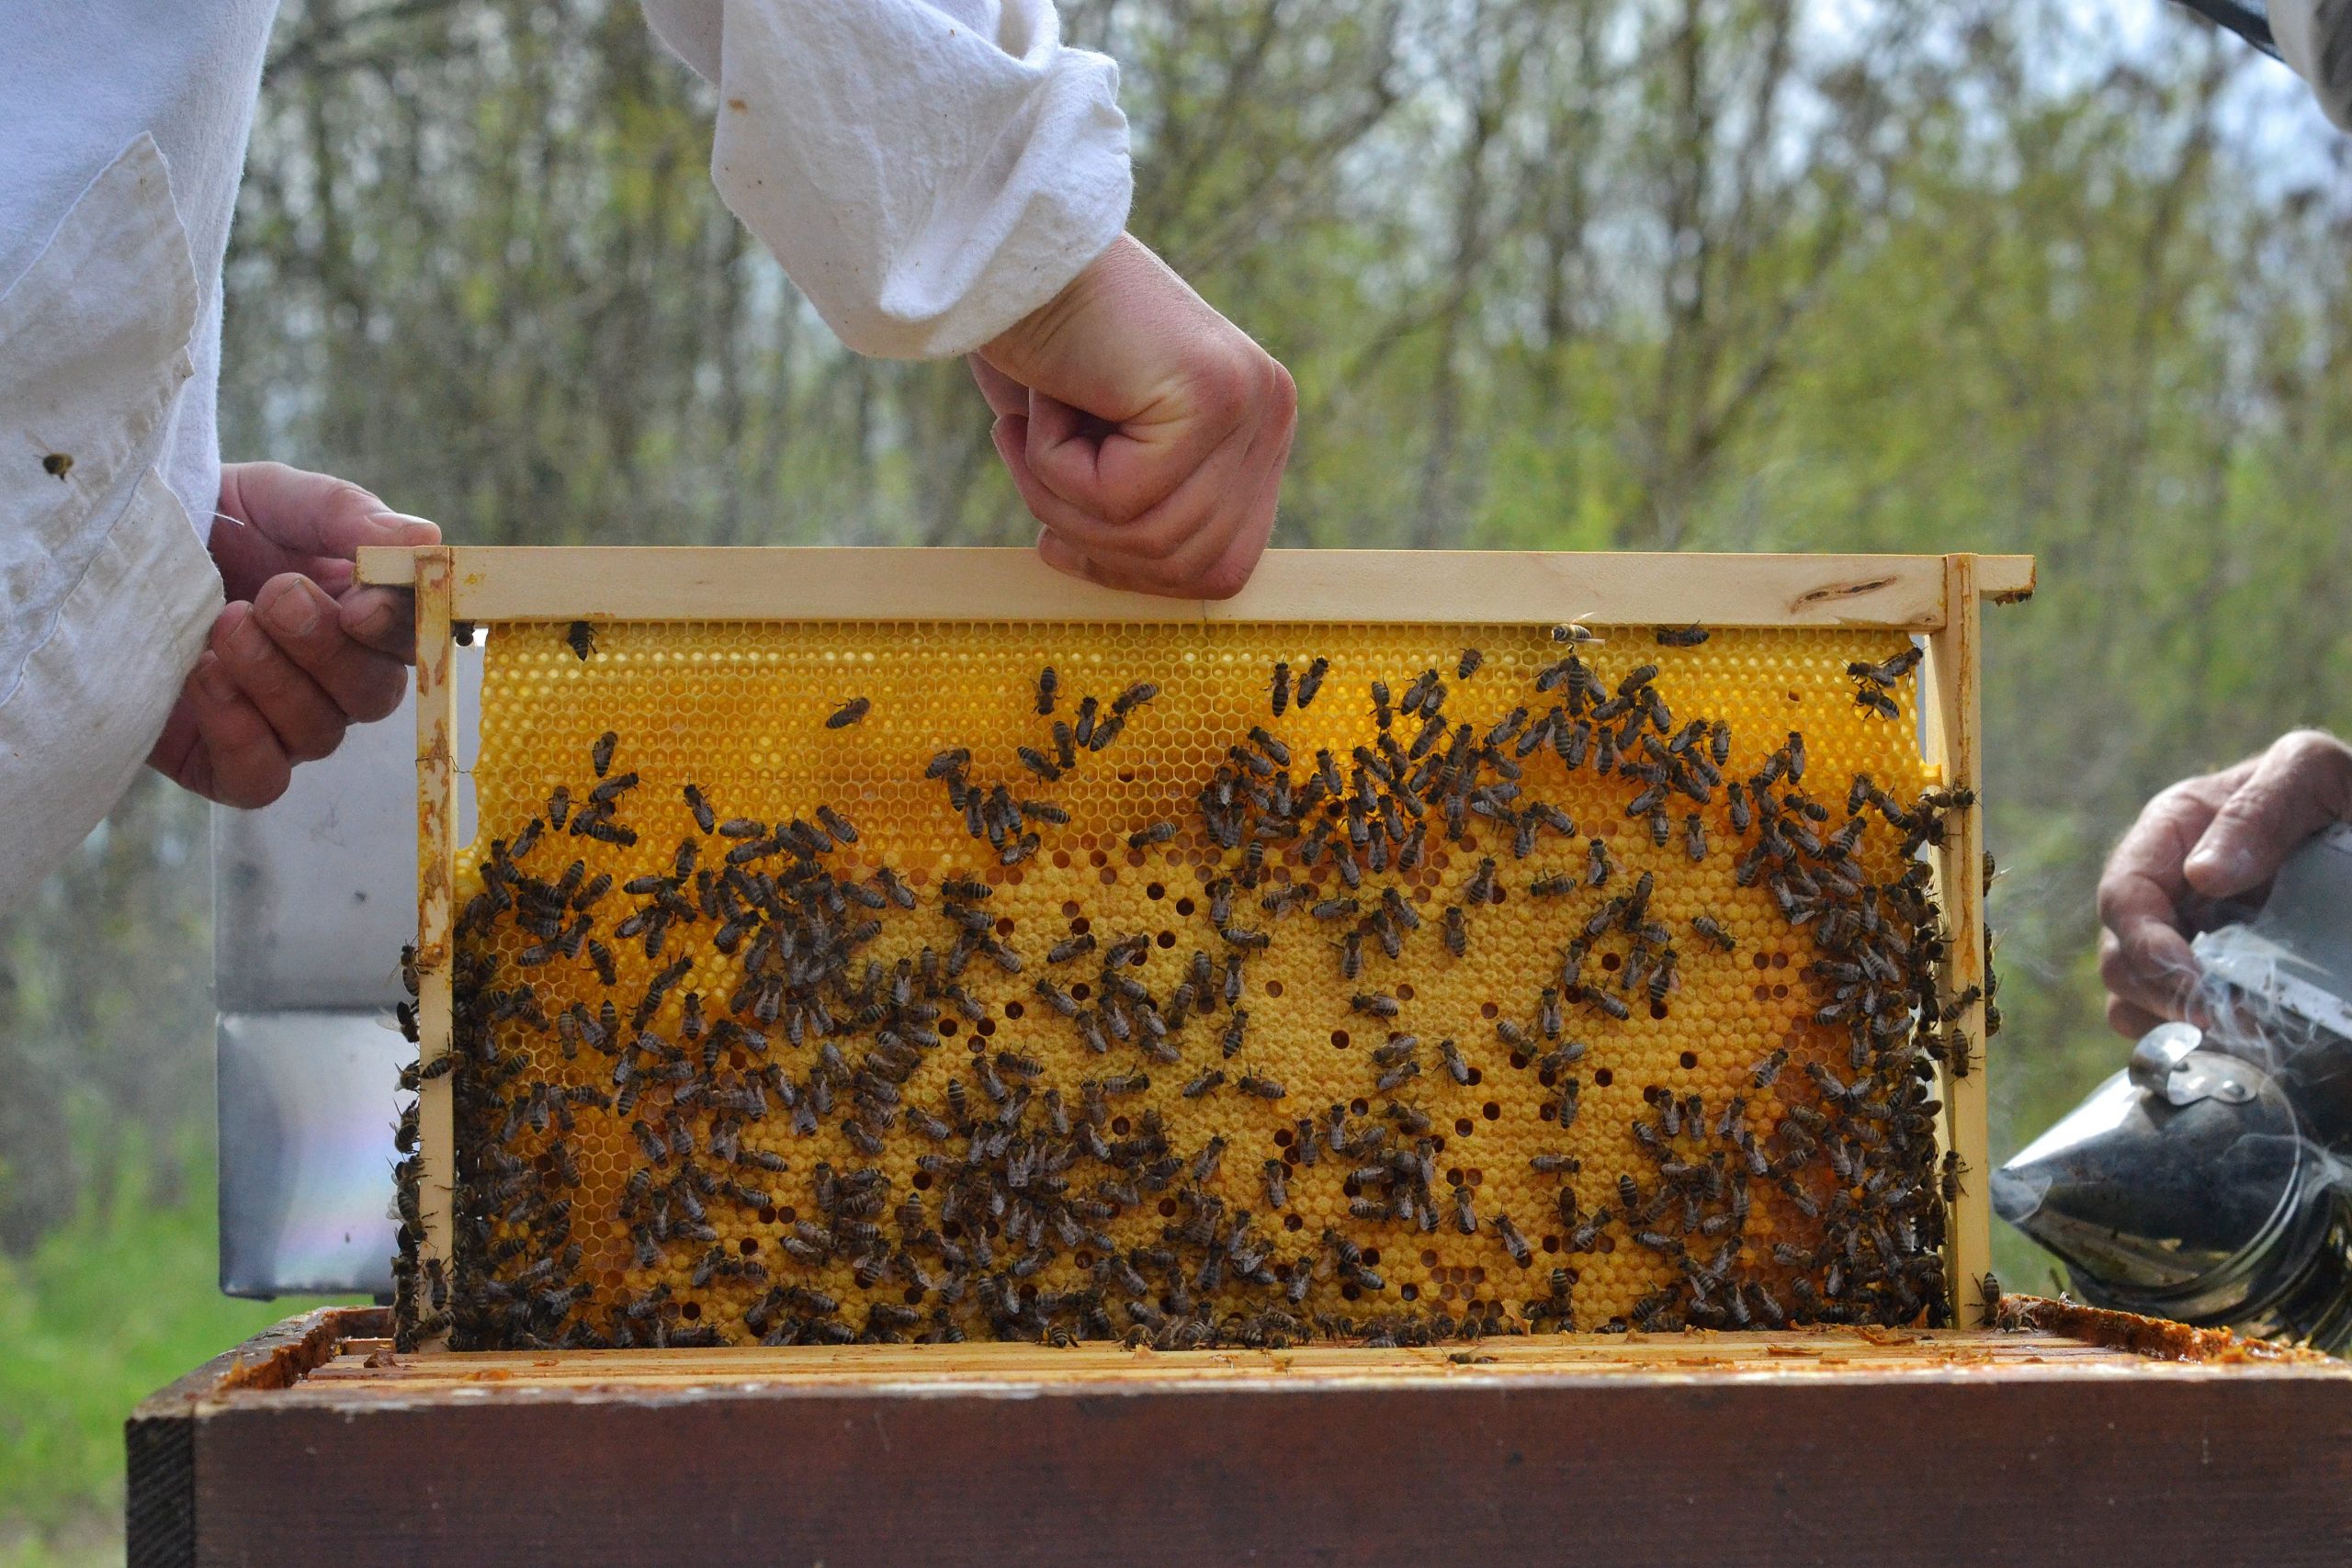 Магията на пчелите във Видин